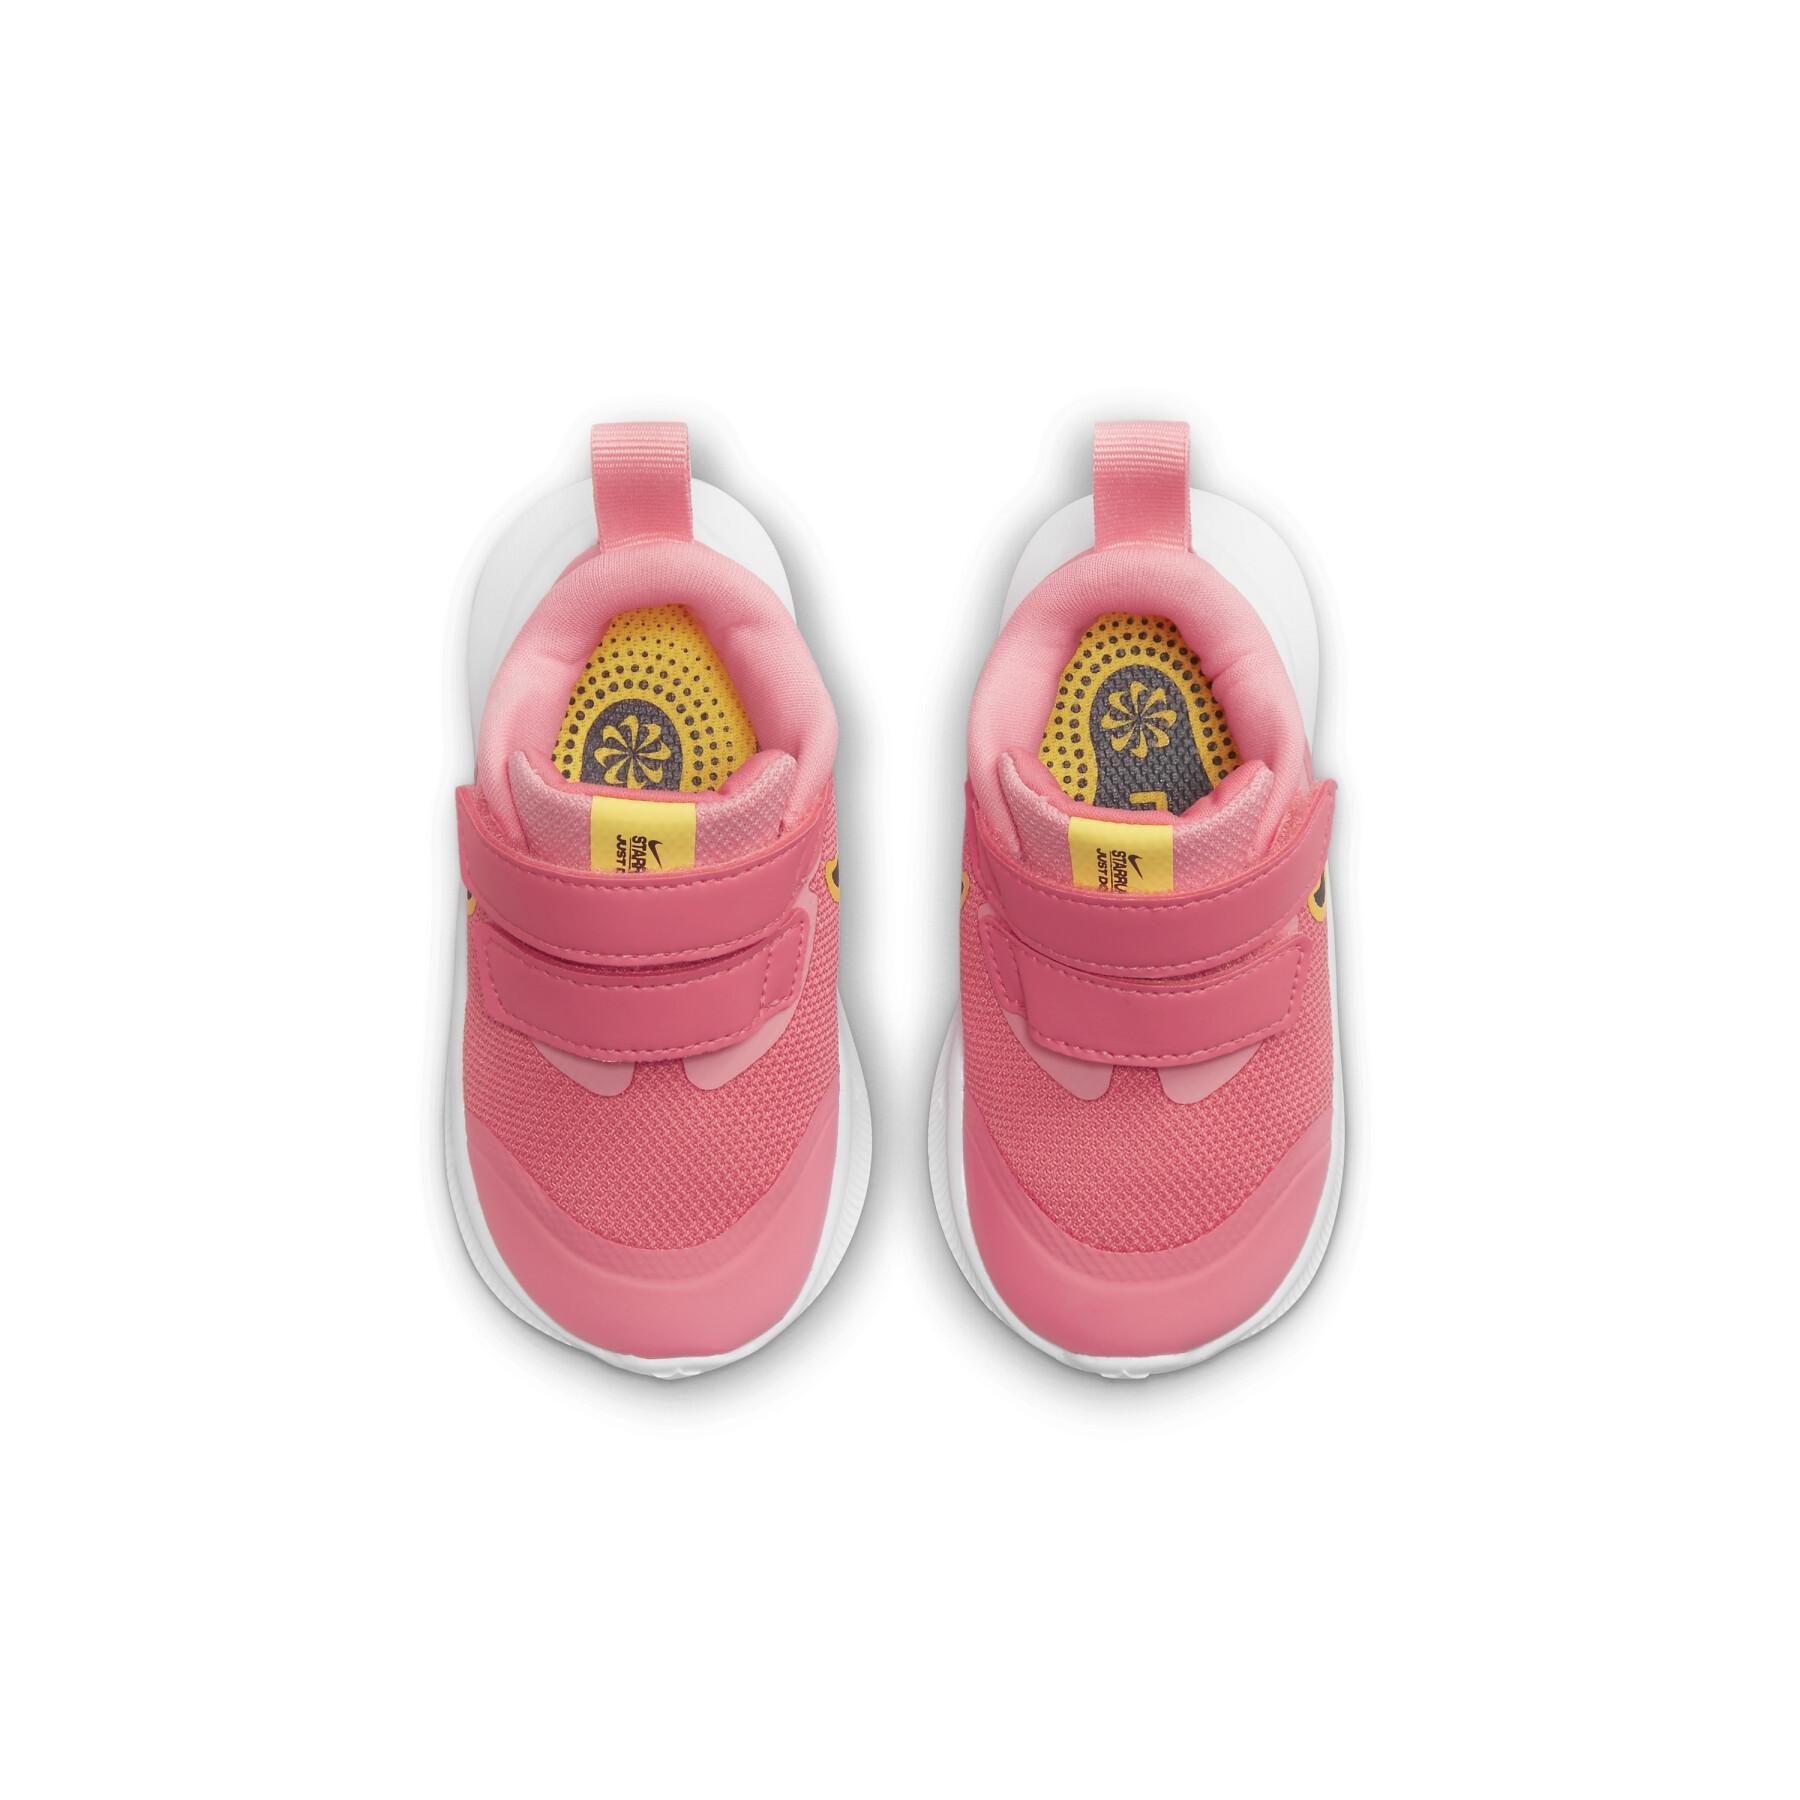 Zapatillas para bebés Nike Star Runner 3